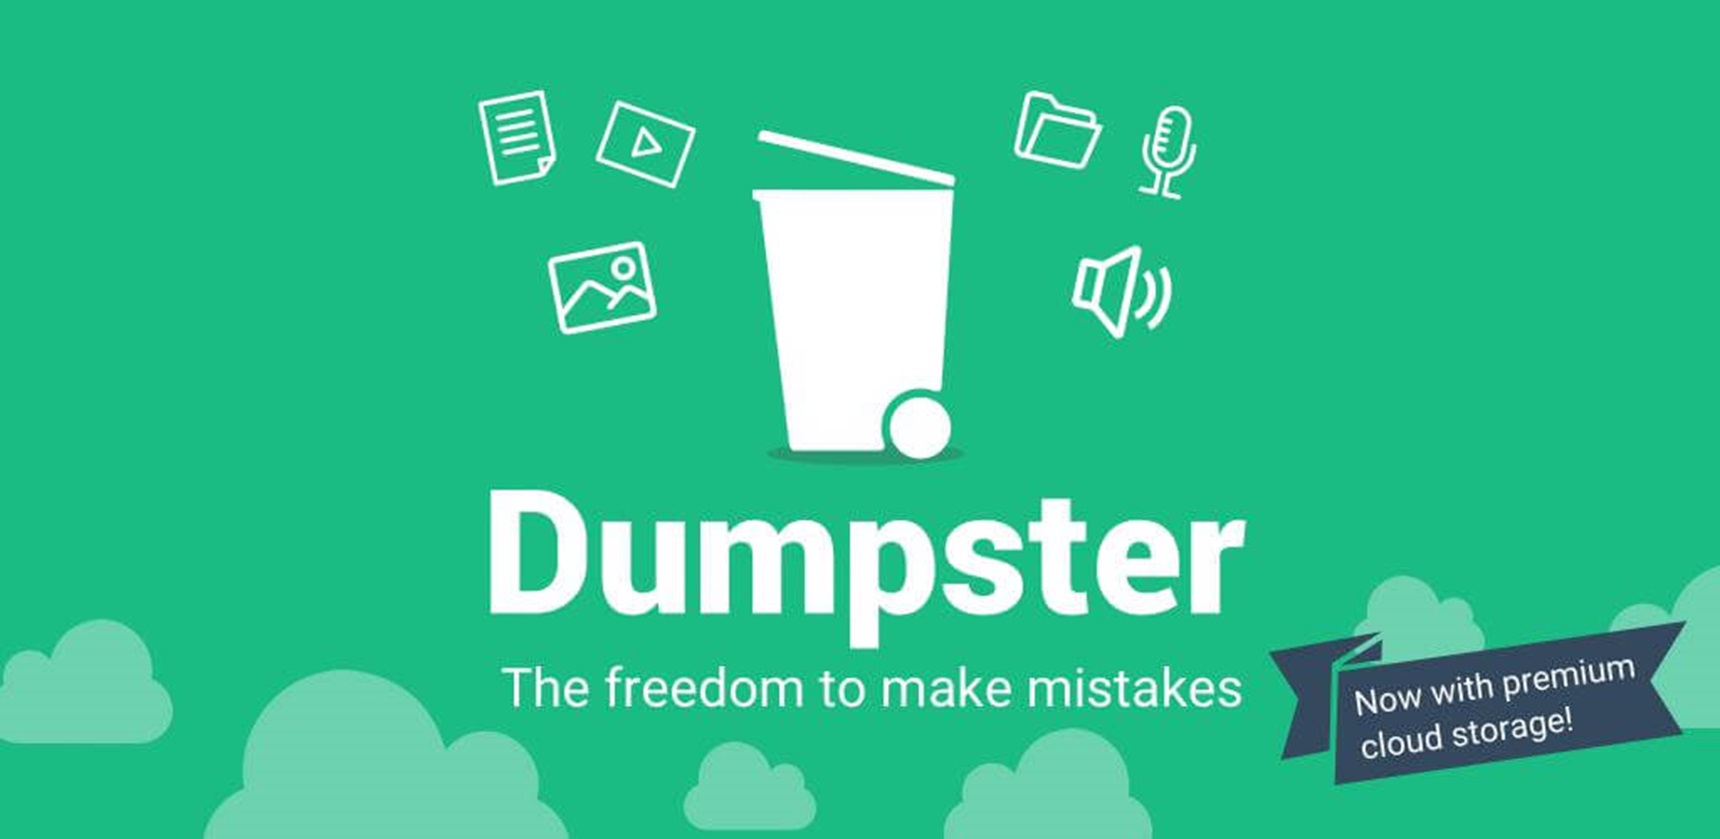 Aplikasi Recover Photos & Video Dumpster MOD